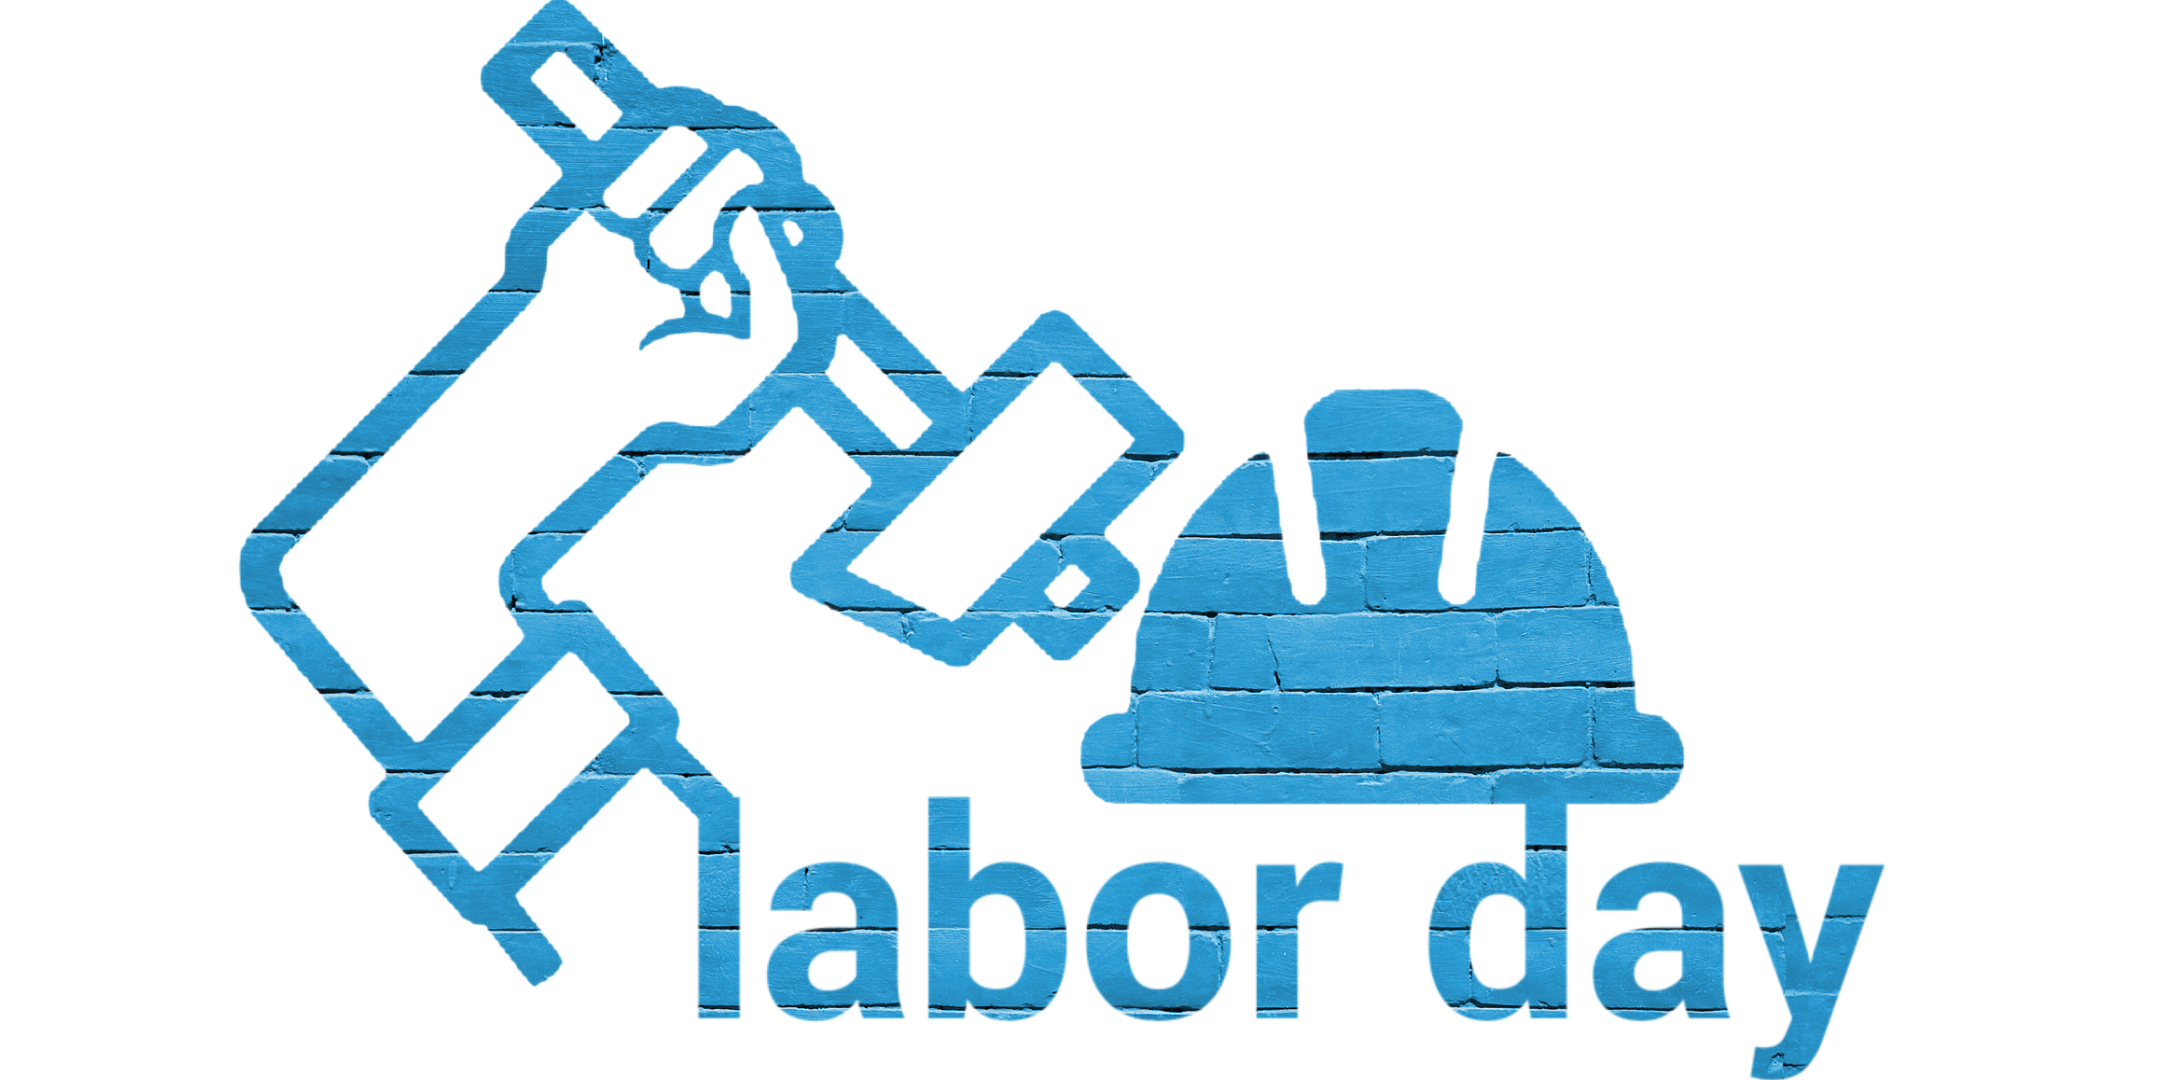 1° Maggio: festeggiamo i lavoratori, ricordandoci di tutelarli ogni giorno dell’anno